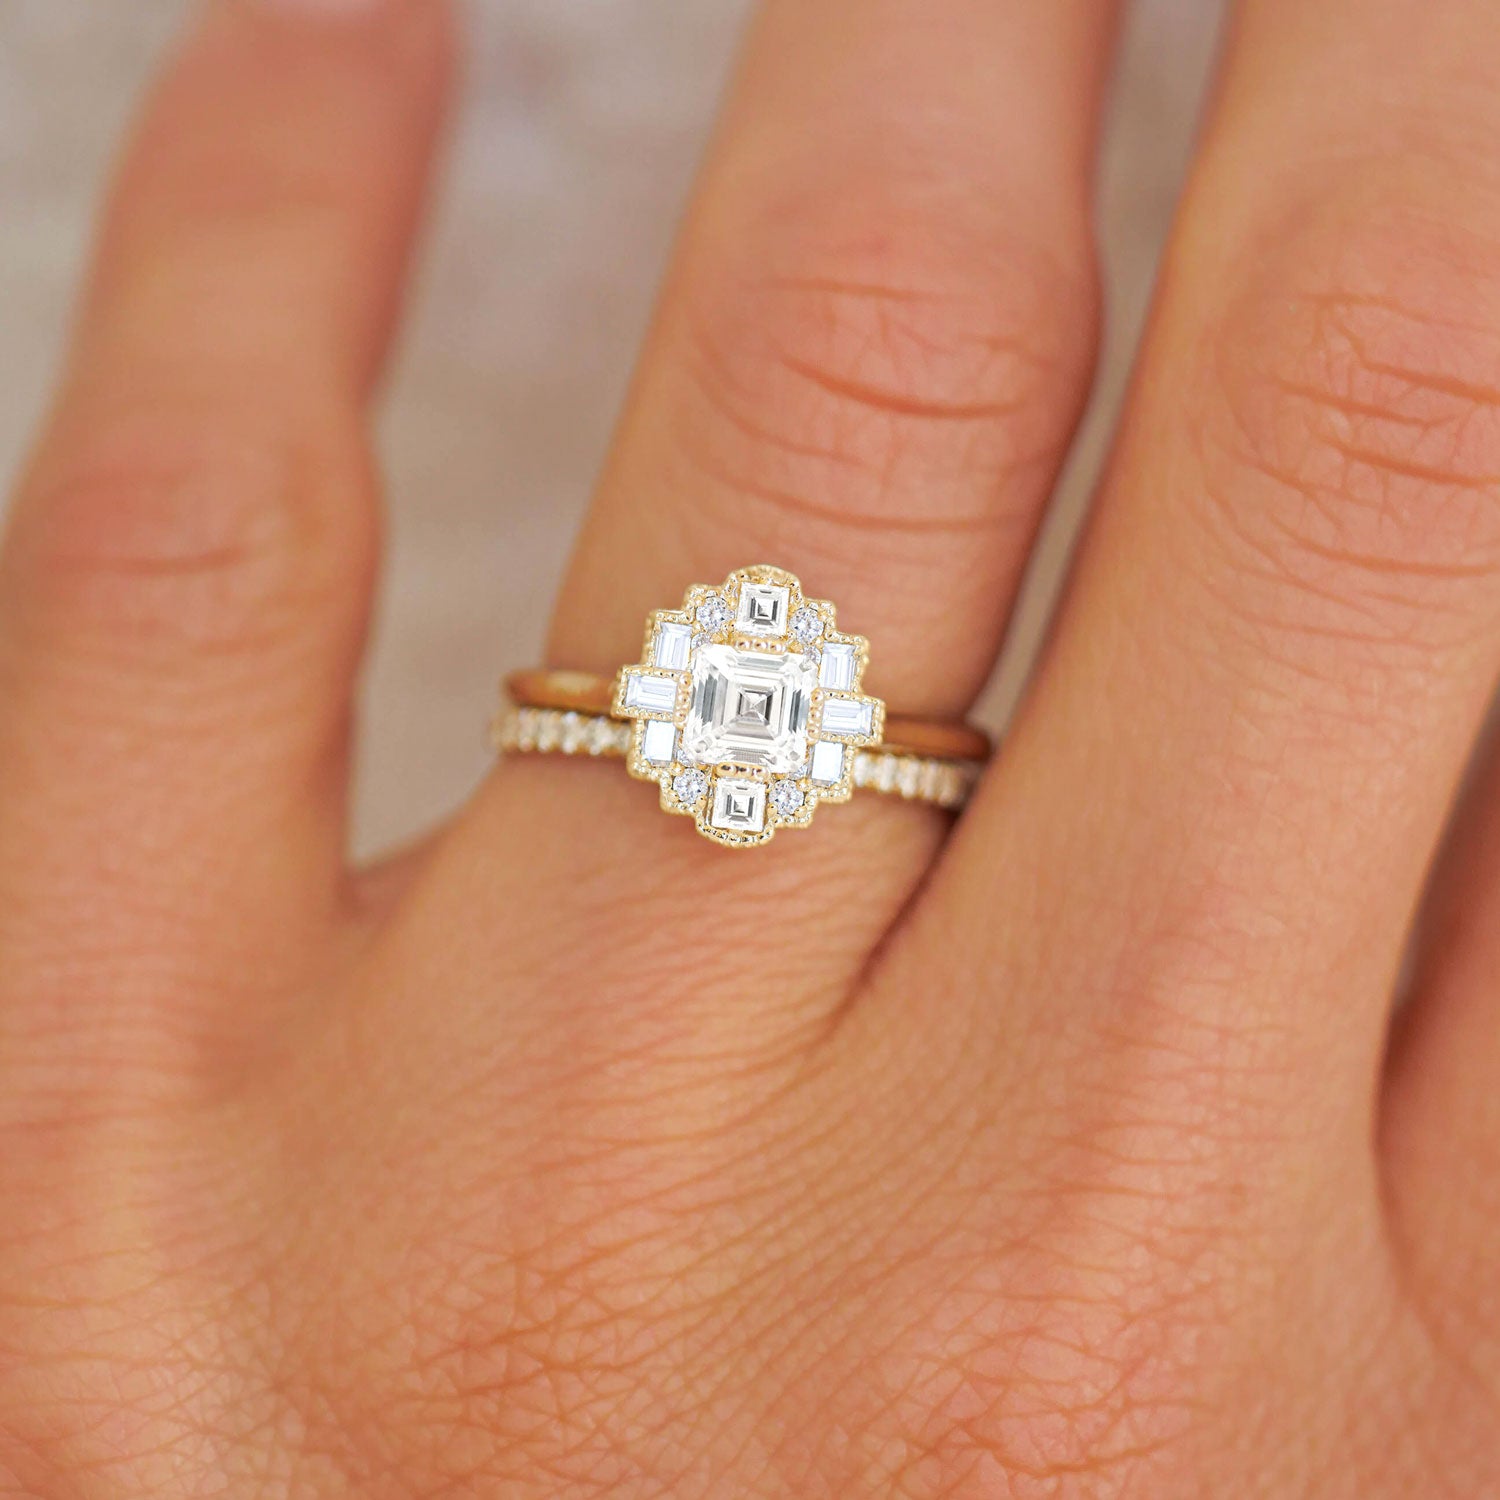 Berlinger Jewelry Men's Asscher Cut Diamond Engagement Ring